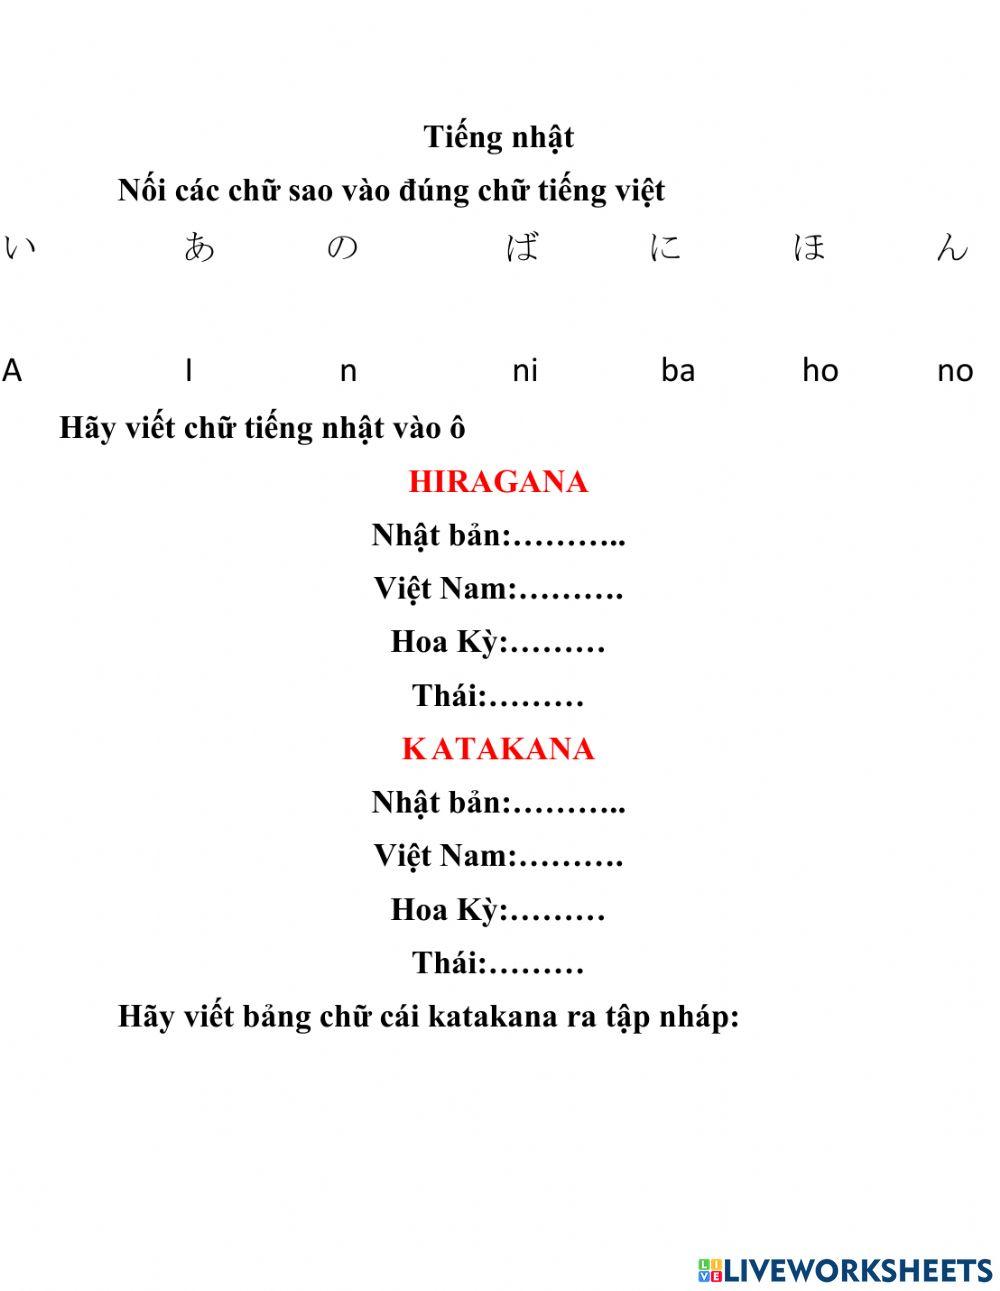 Bài tập môn tiếng nhật: ôn tập katakana và hiragana